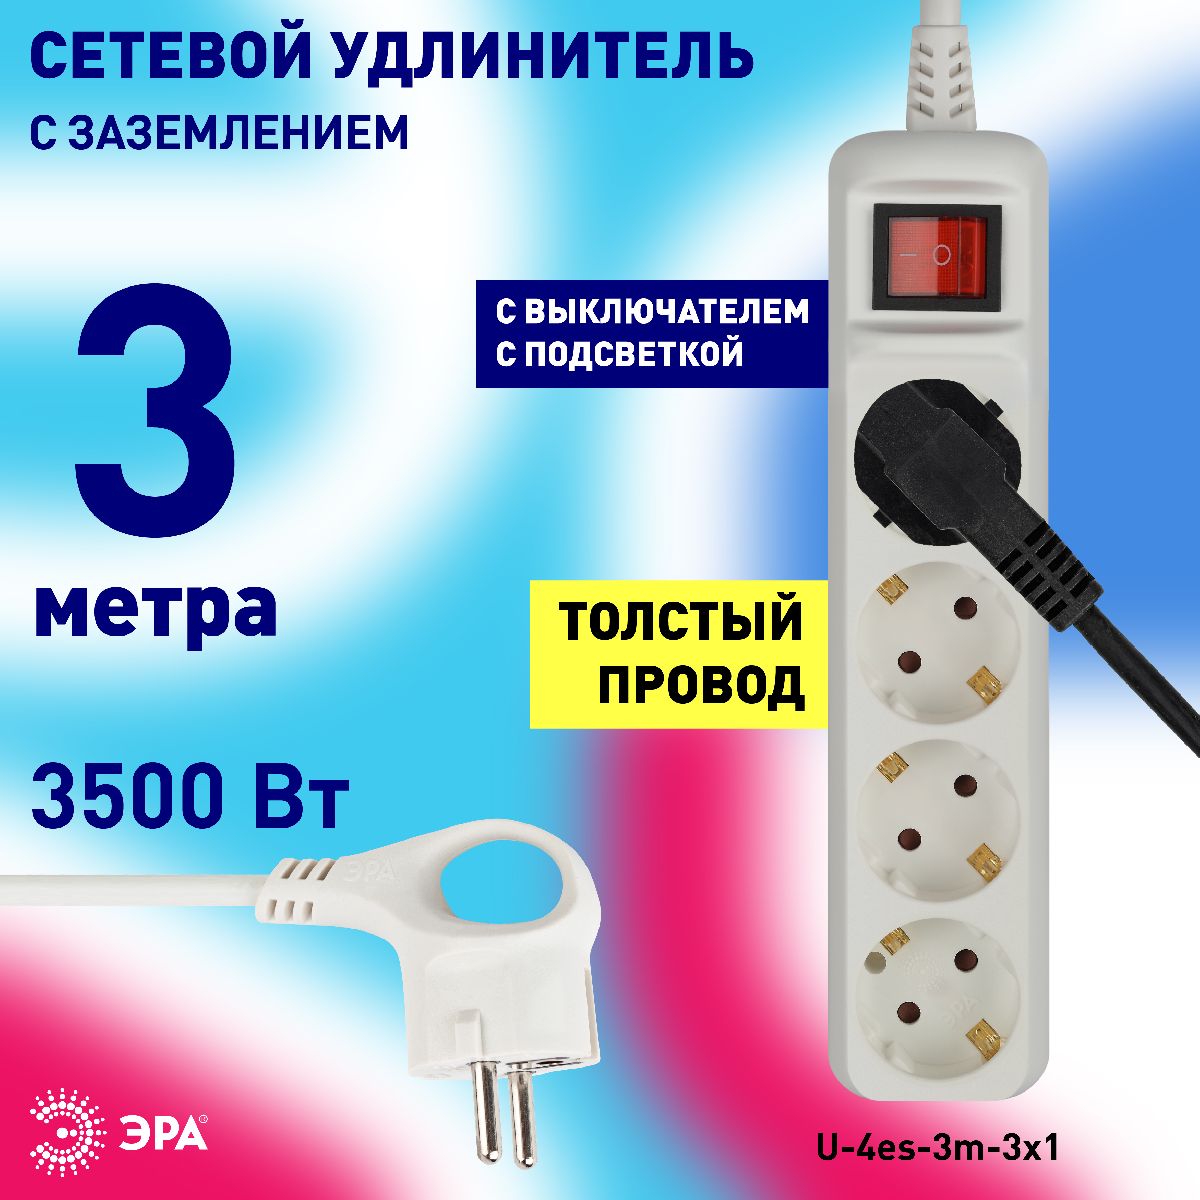 Удлинитель электрический Эра U-4es-3m-3x1 Б0028381